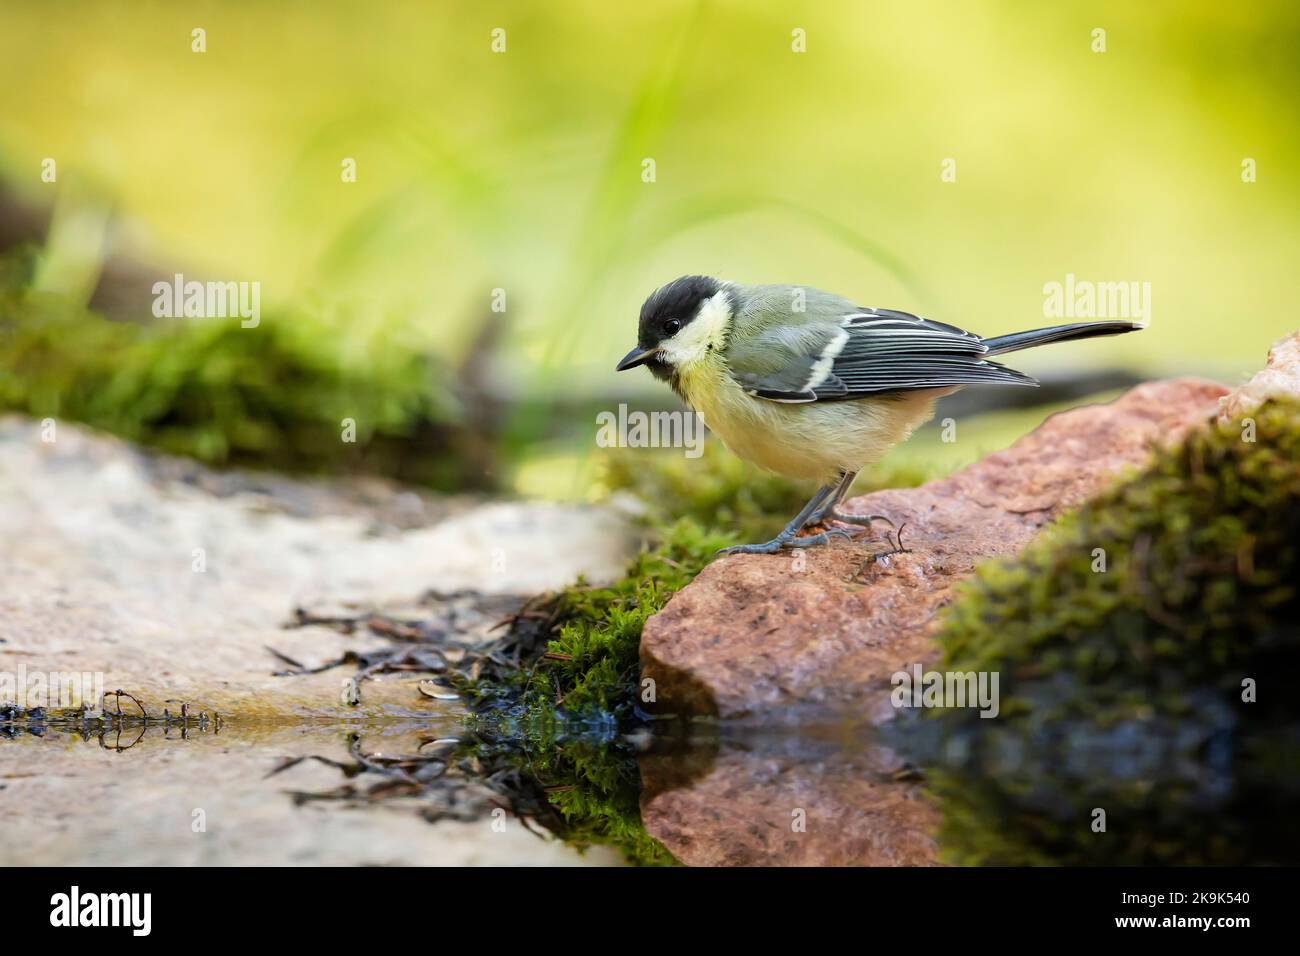 Super Til Parus Major. Oiseau de jardin, perché sur une pierre avec de la mousse près de l'eau dans un étang de forêt Banque D'Images